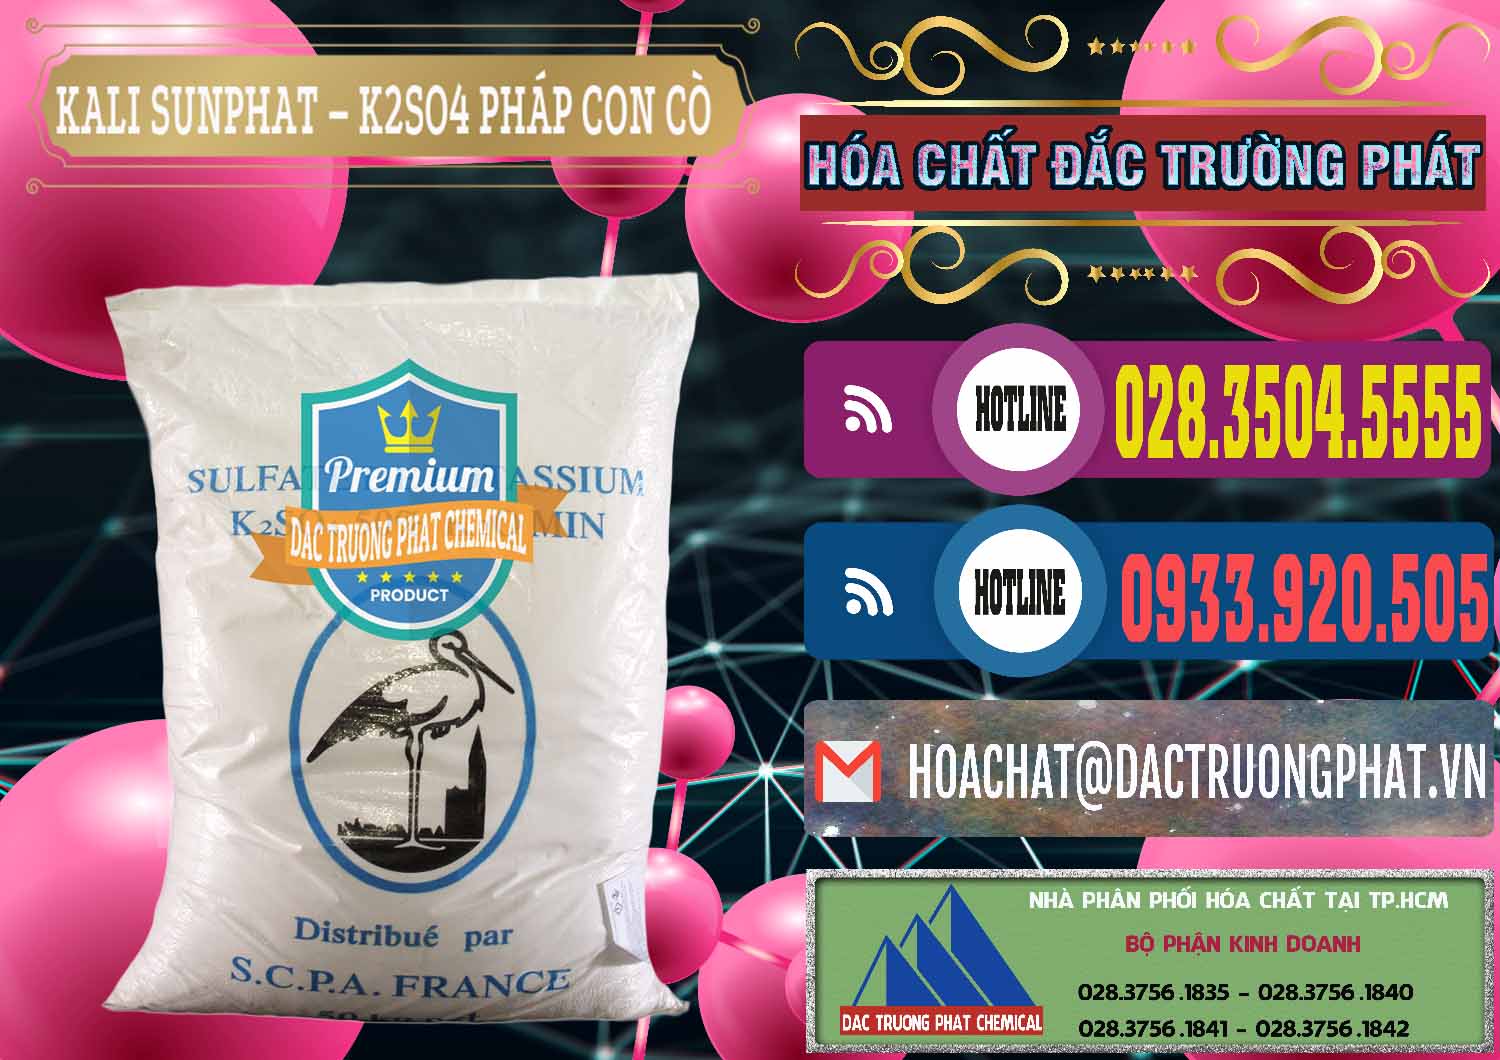 Đơn vị bán & cung cấp Kali Sunphat – K2SO4 Con Cò Pháp France - 0083 - Cty phân phối _ cung cấp hóa chất tại TP.HCM - muabanhoachat.com.vn